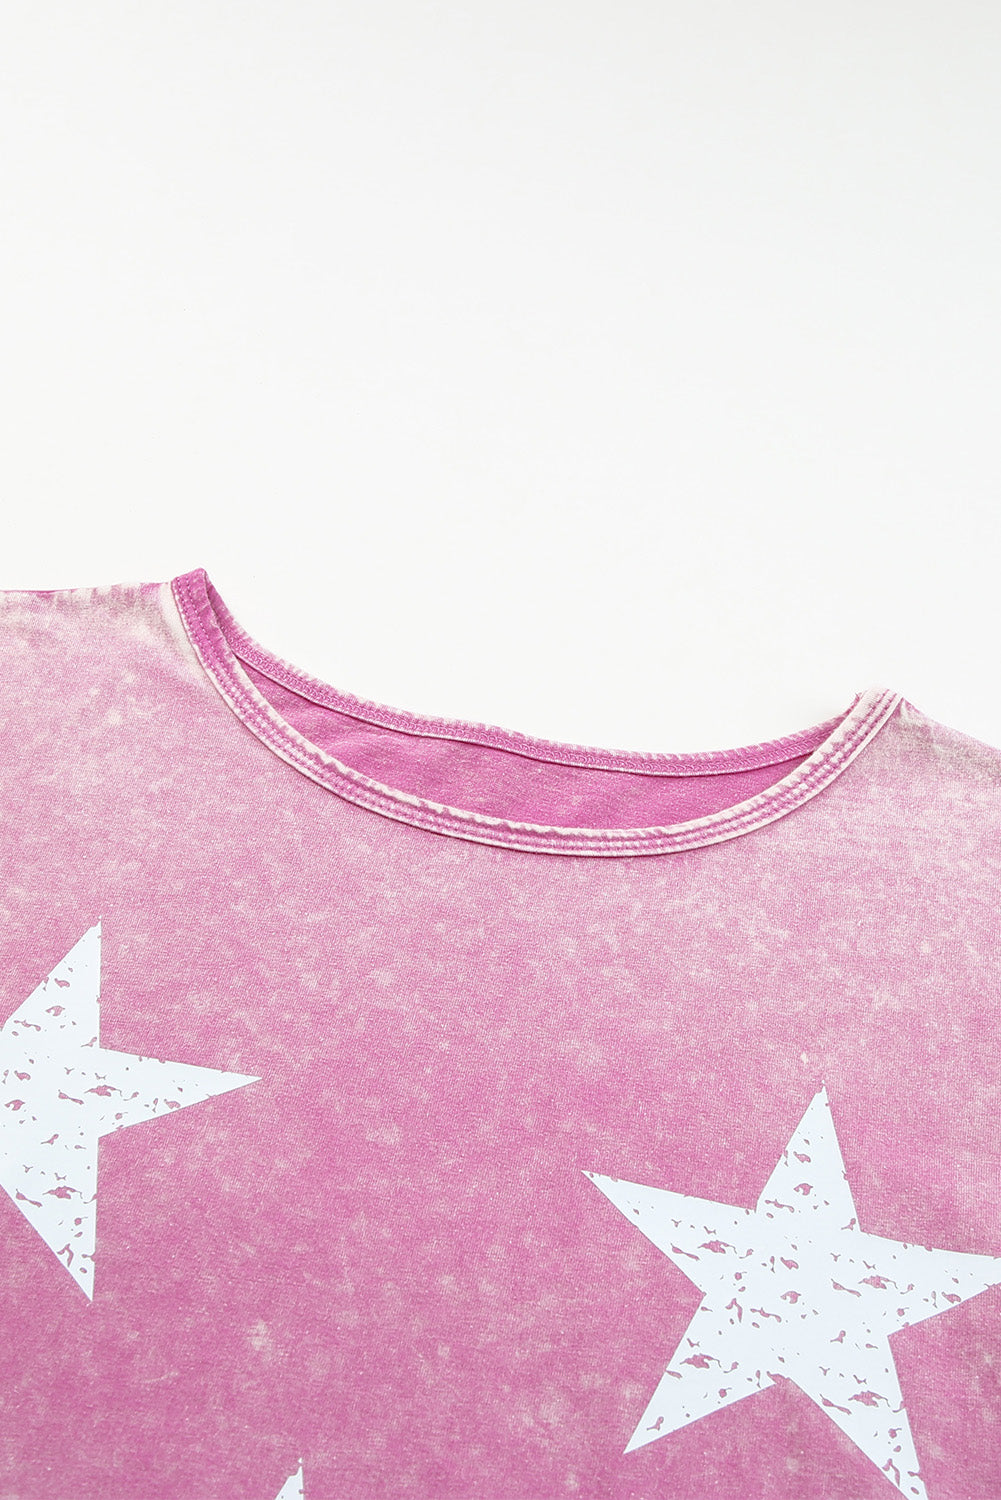 Rosafarbenes T-Shirt mit Vintage-Sternmuster und Mineralwasch-Grafik